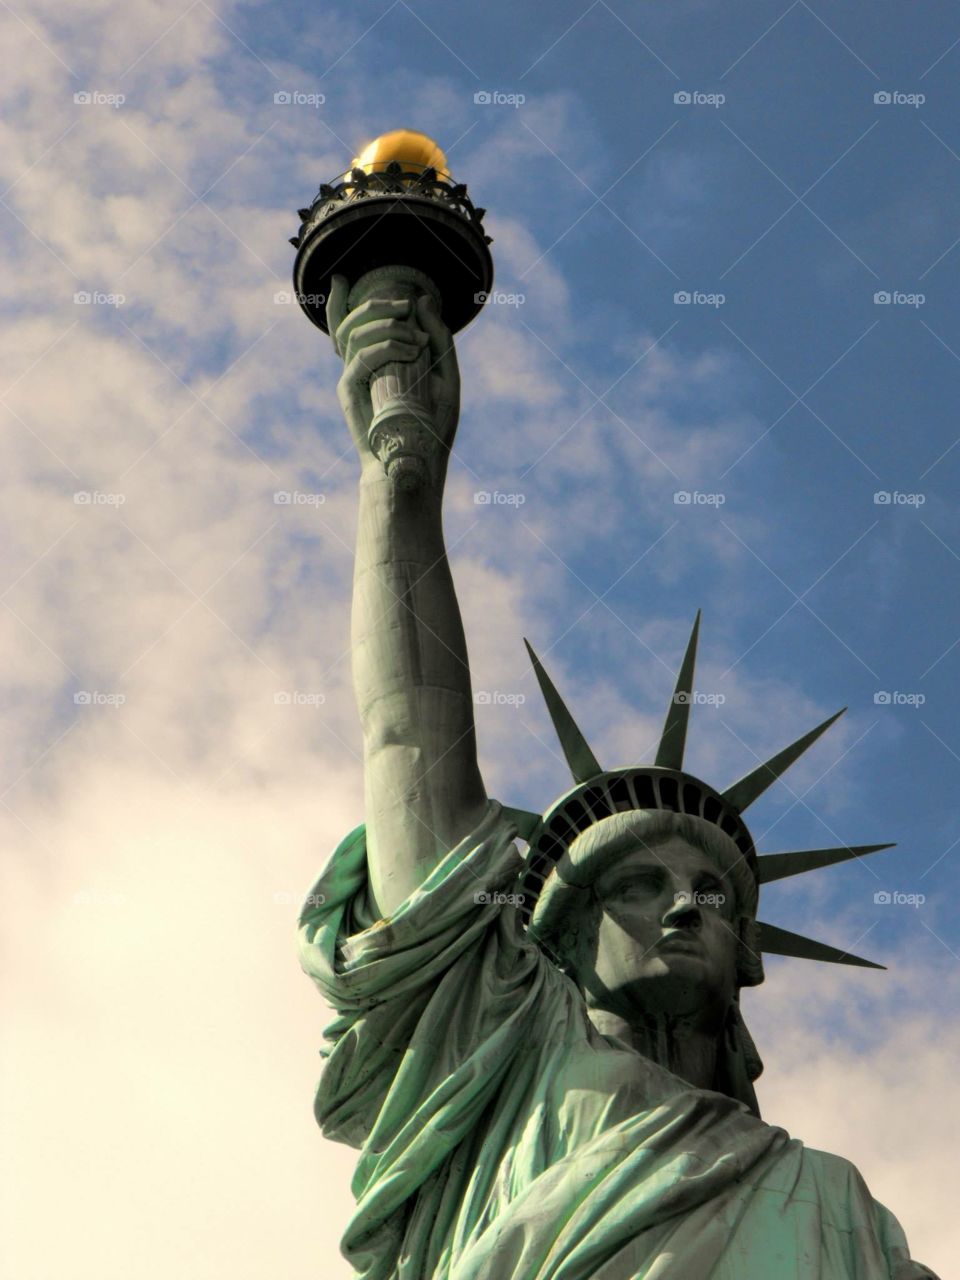 Lady Liberty. Statue of Liberty on Battery Island